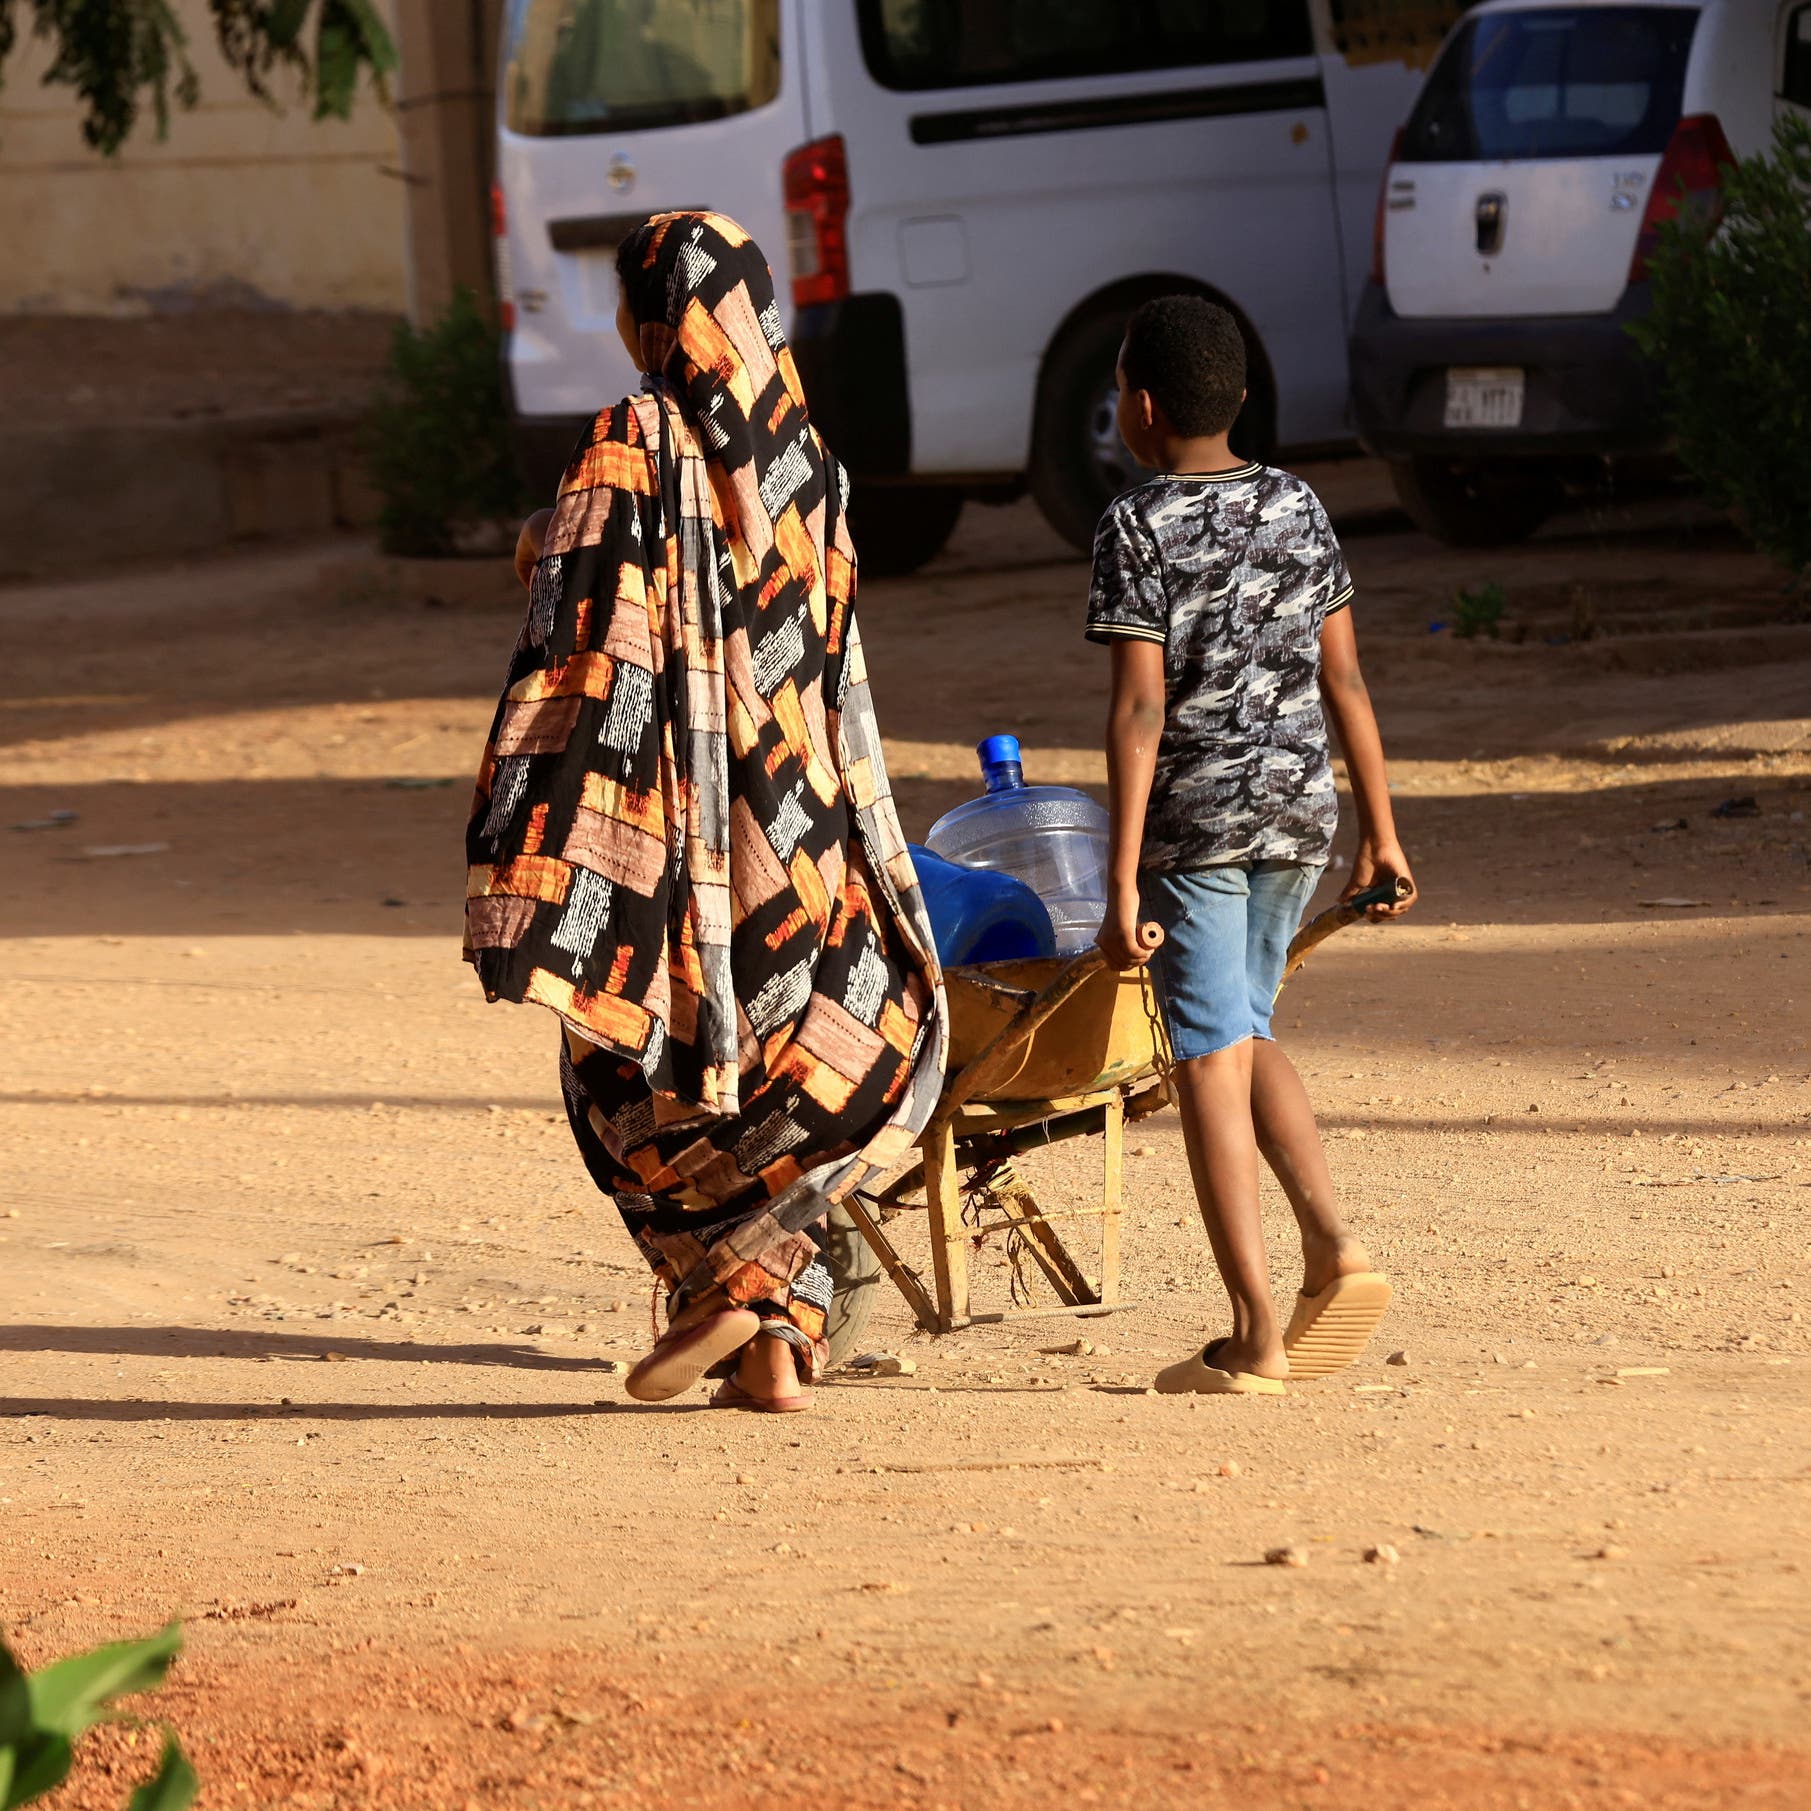 الدعم السريع: مستعدون للوصول لأي تفاهمات لإنقاذ حياة السودانيين